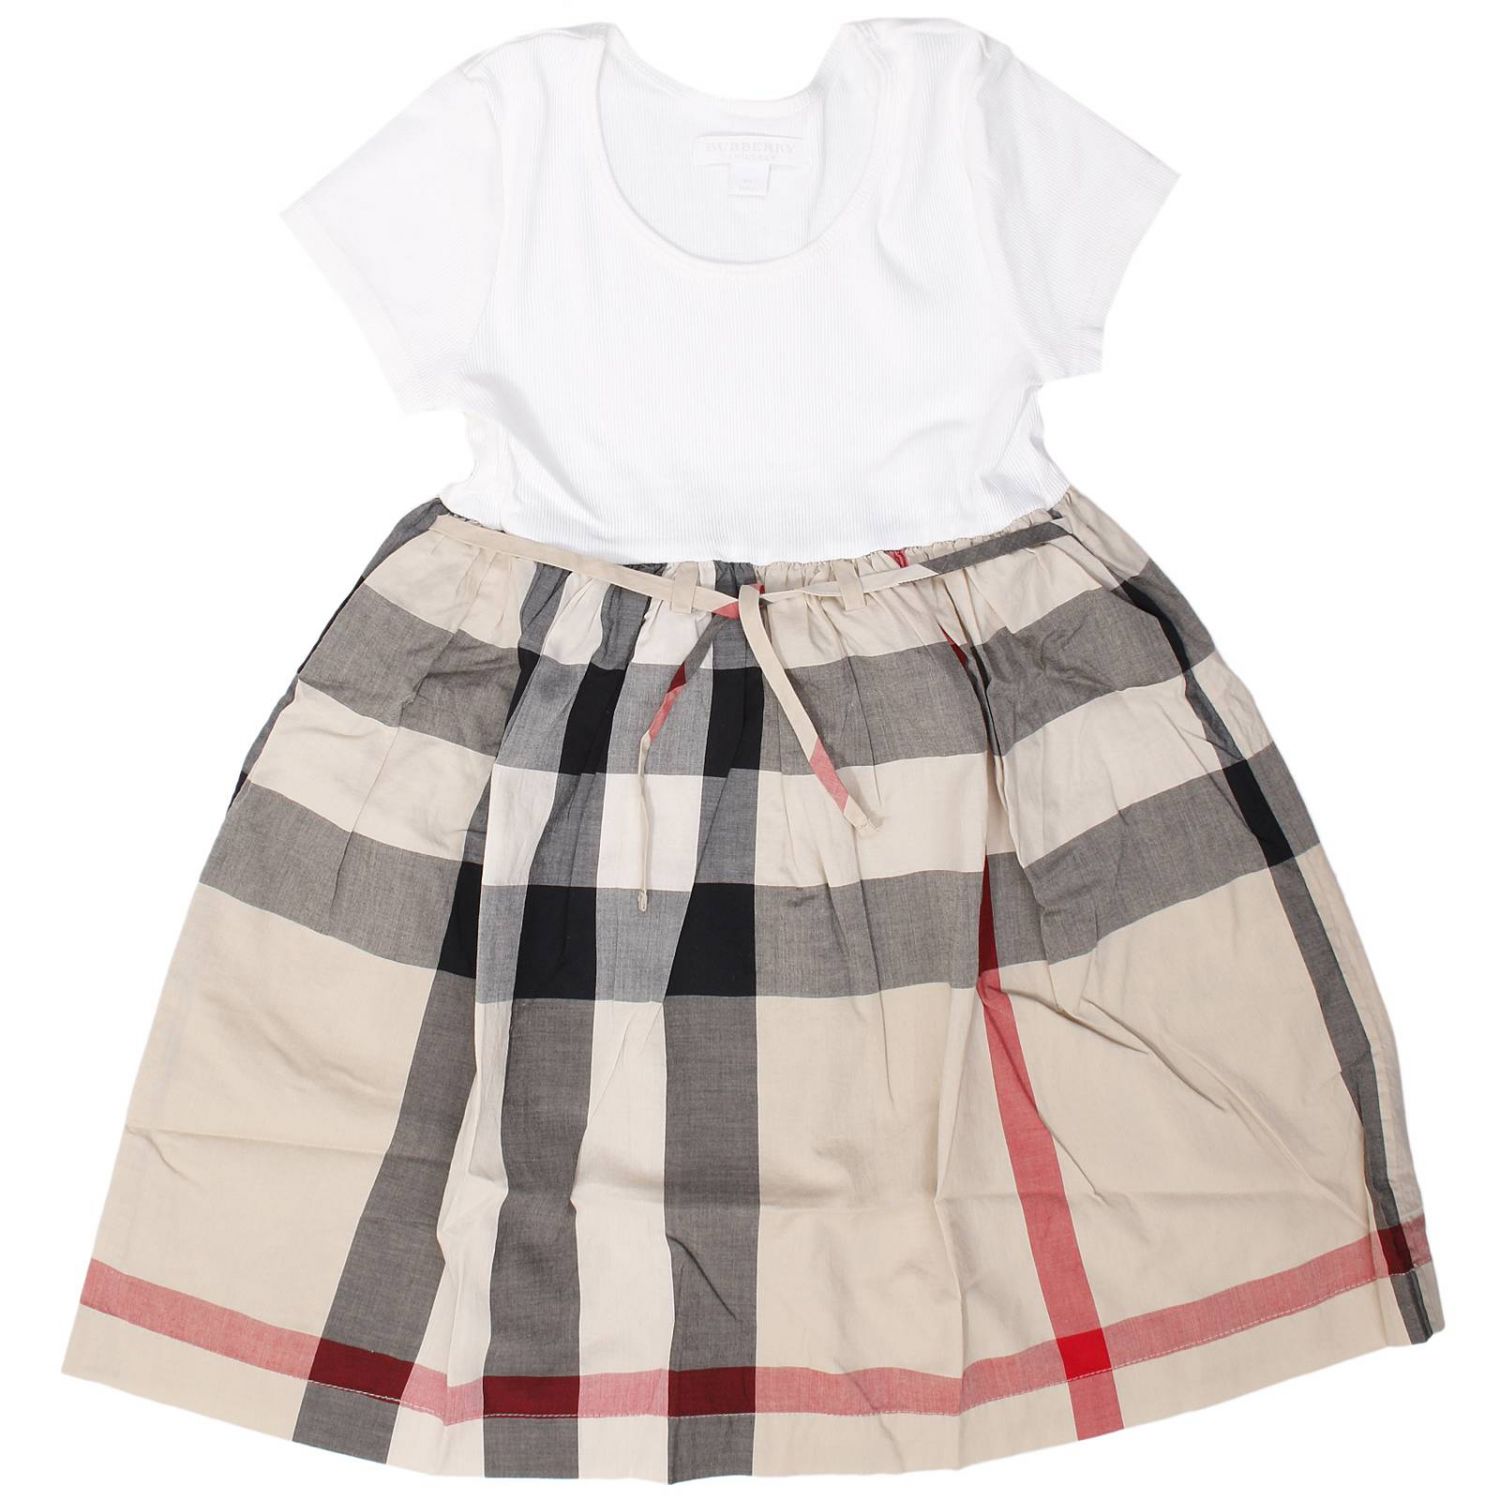 burberry skirt toddler